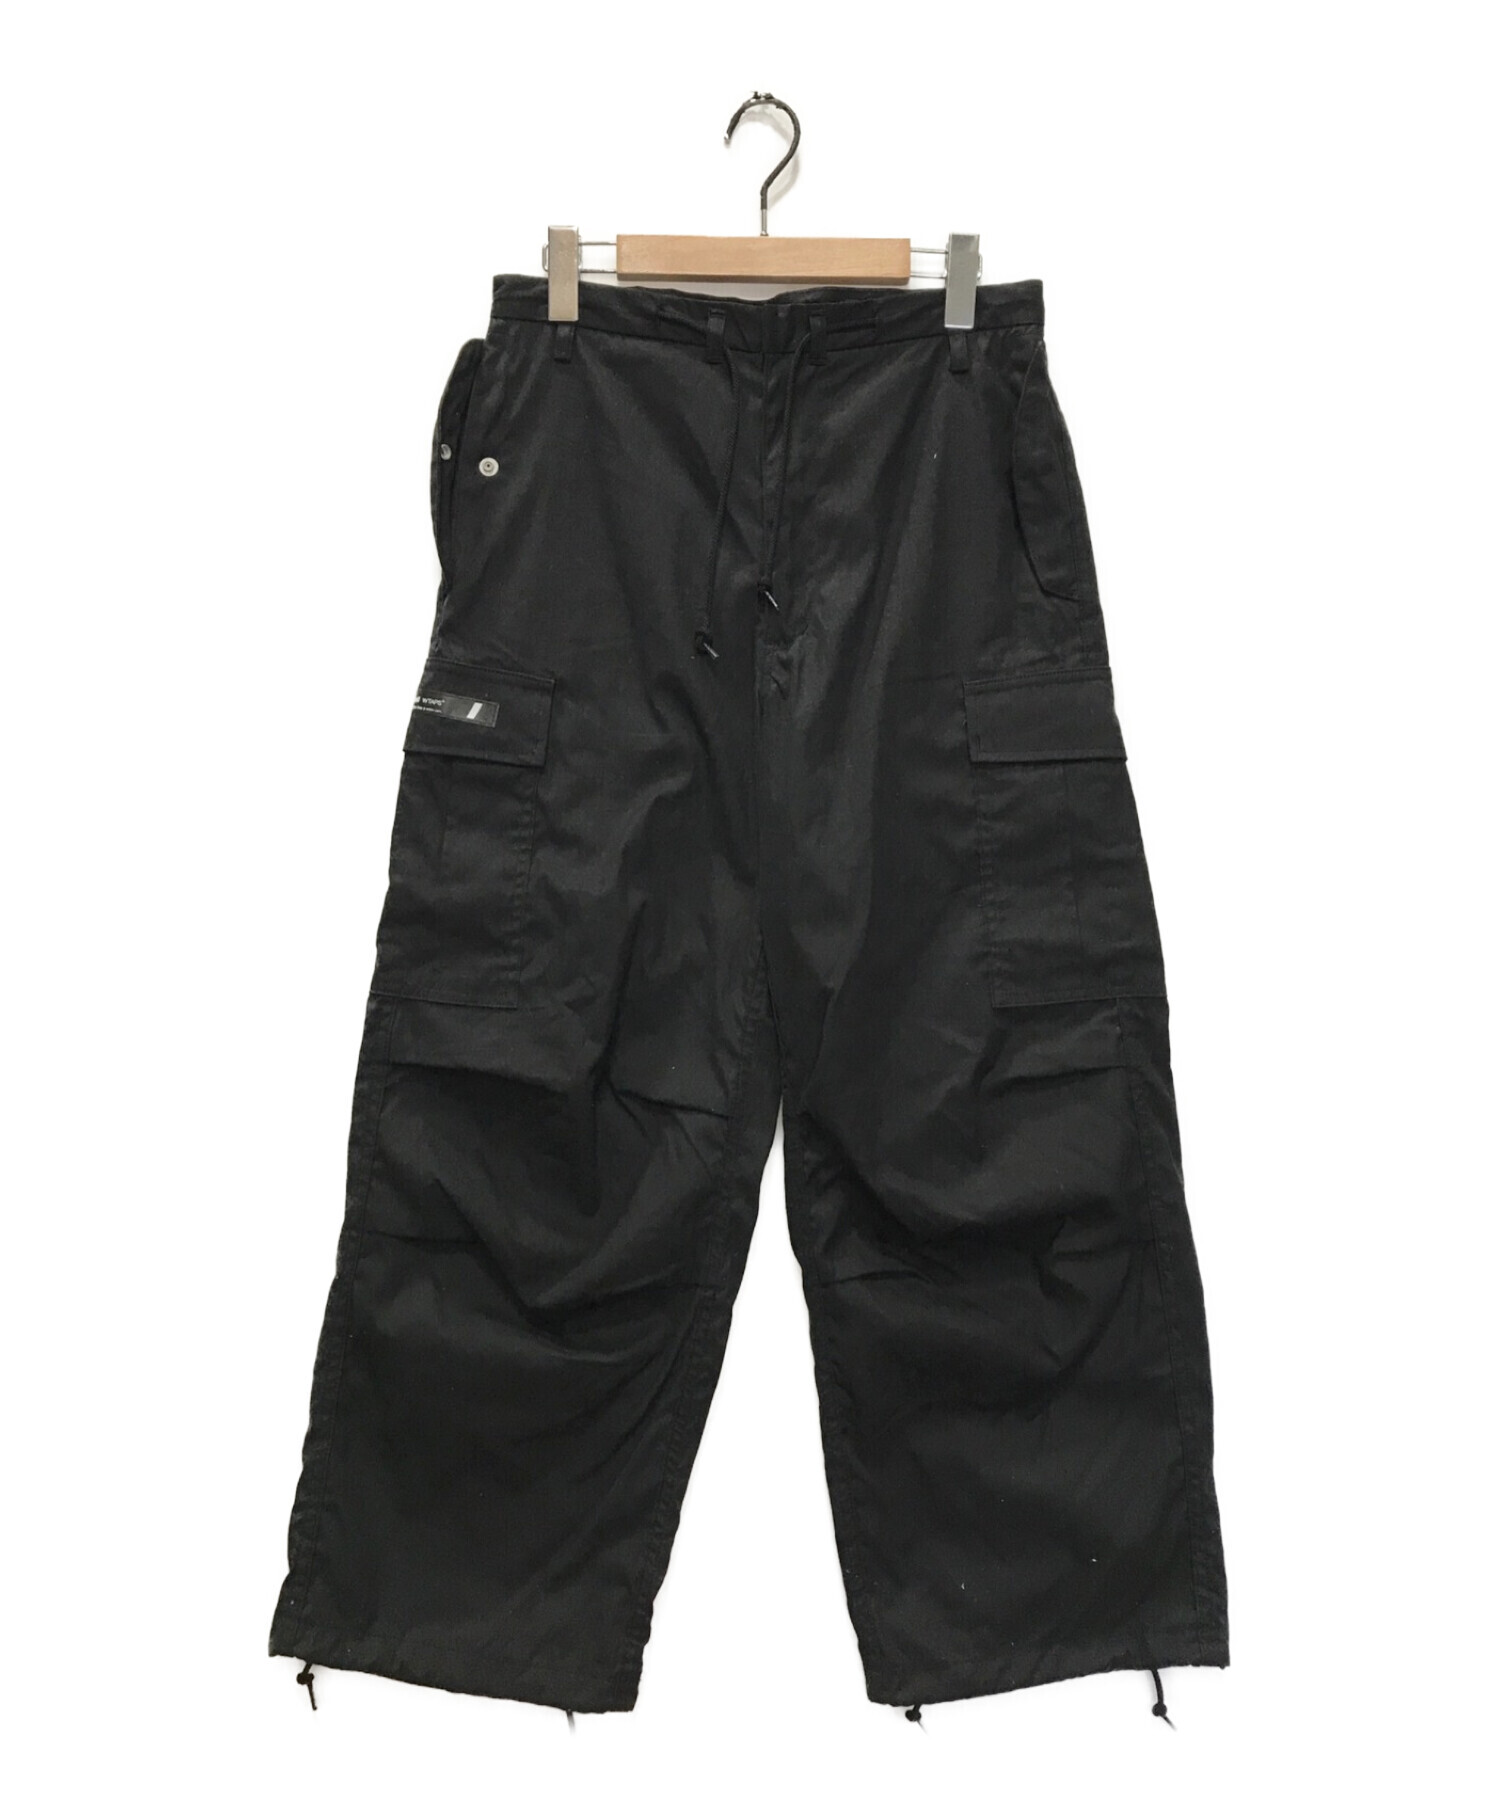 パンツwtaps trousers nyco oxford black 01 - ワークパンツ/カーゴパンツ